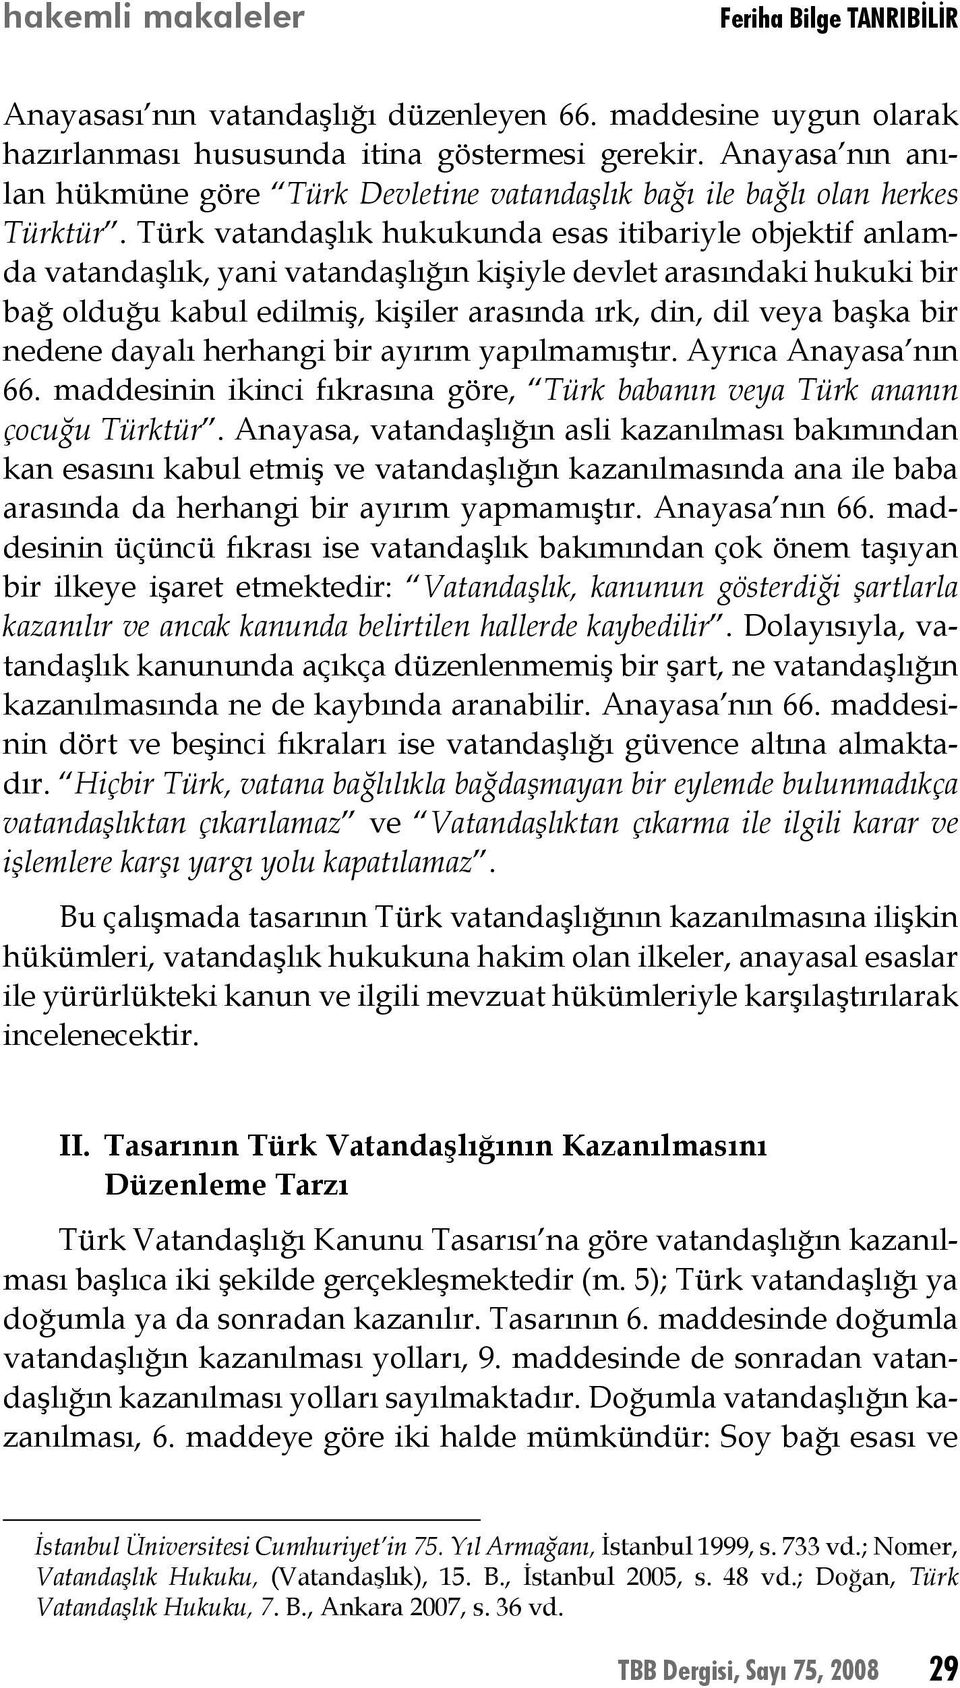 Türk vatandaşlık hukukunda esas itibariyle objektif anlamda vatandaşlık, yani vatandaşlığın kişiyle devlet arasındaki hukuki bir bağ olduğu kabul edilmiş, kişiler arasında ırk, din, dil veya başka